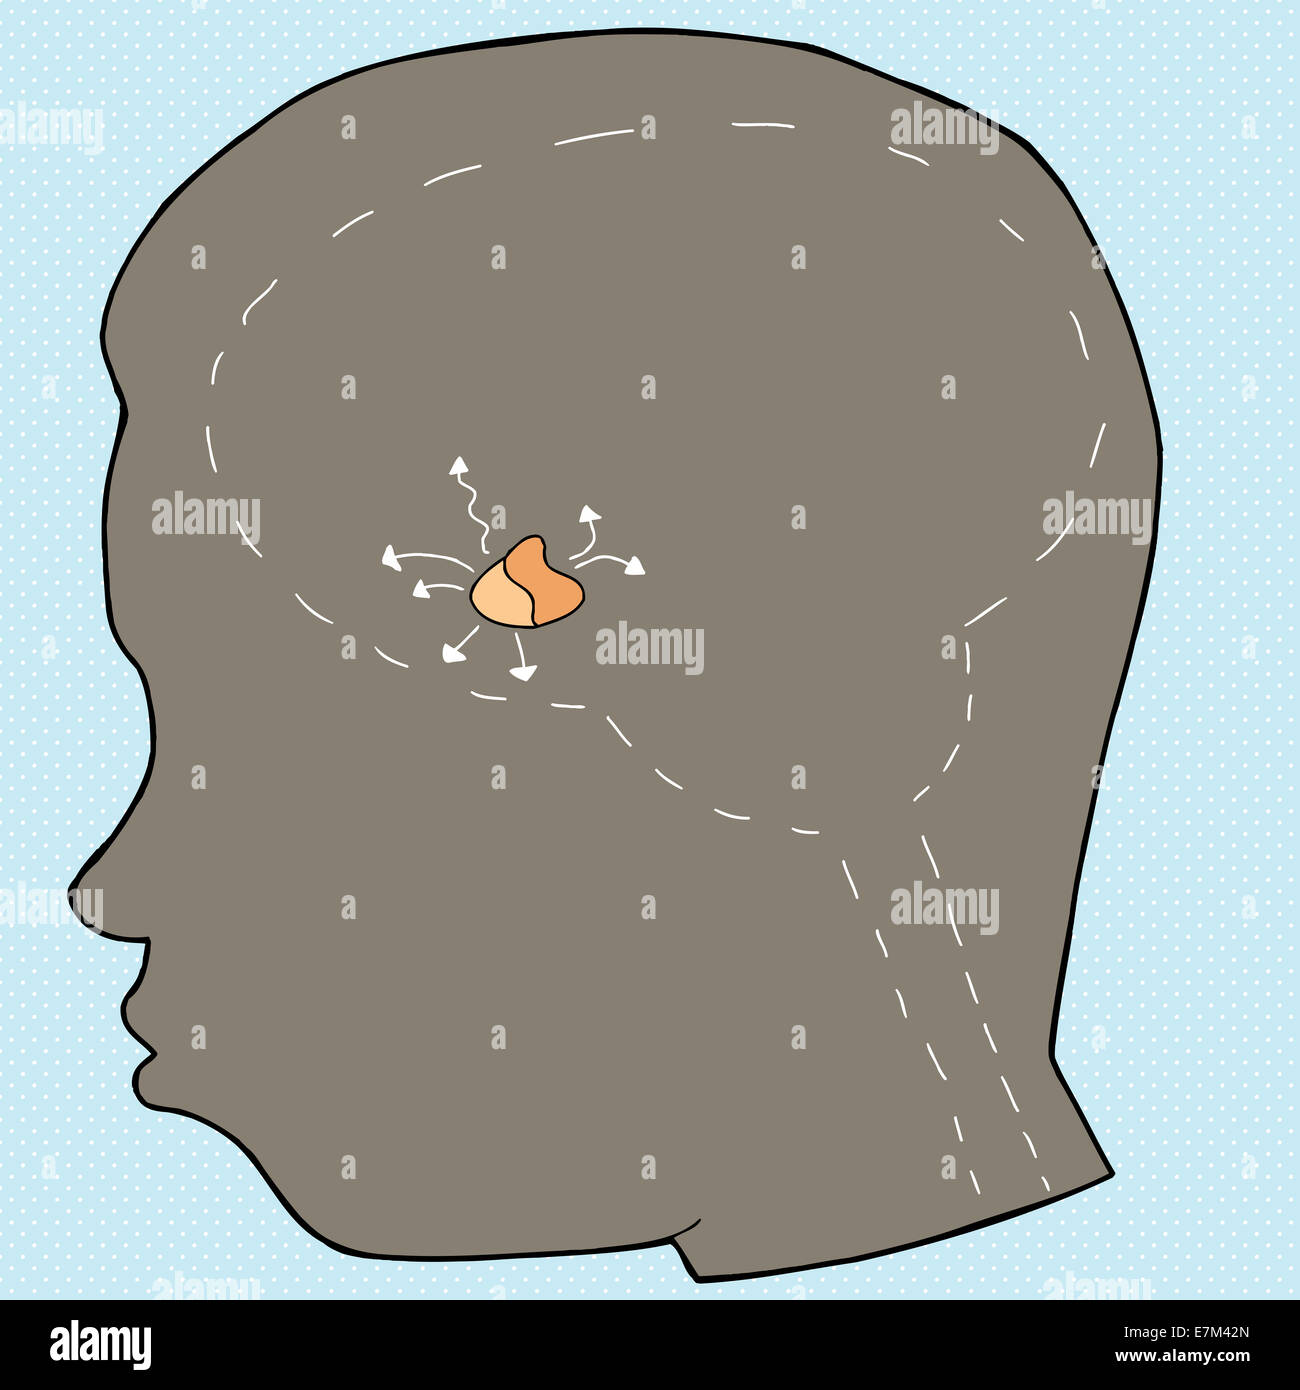 Schema della ghiandola pituitaria in testa umana Foto Stock